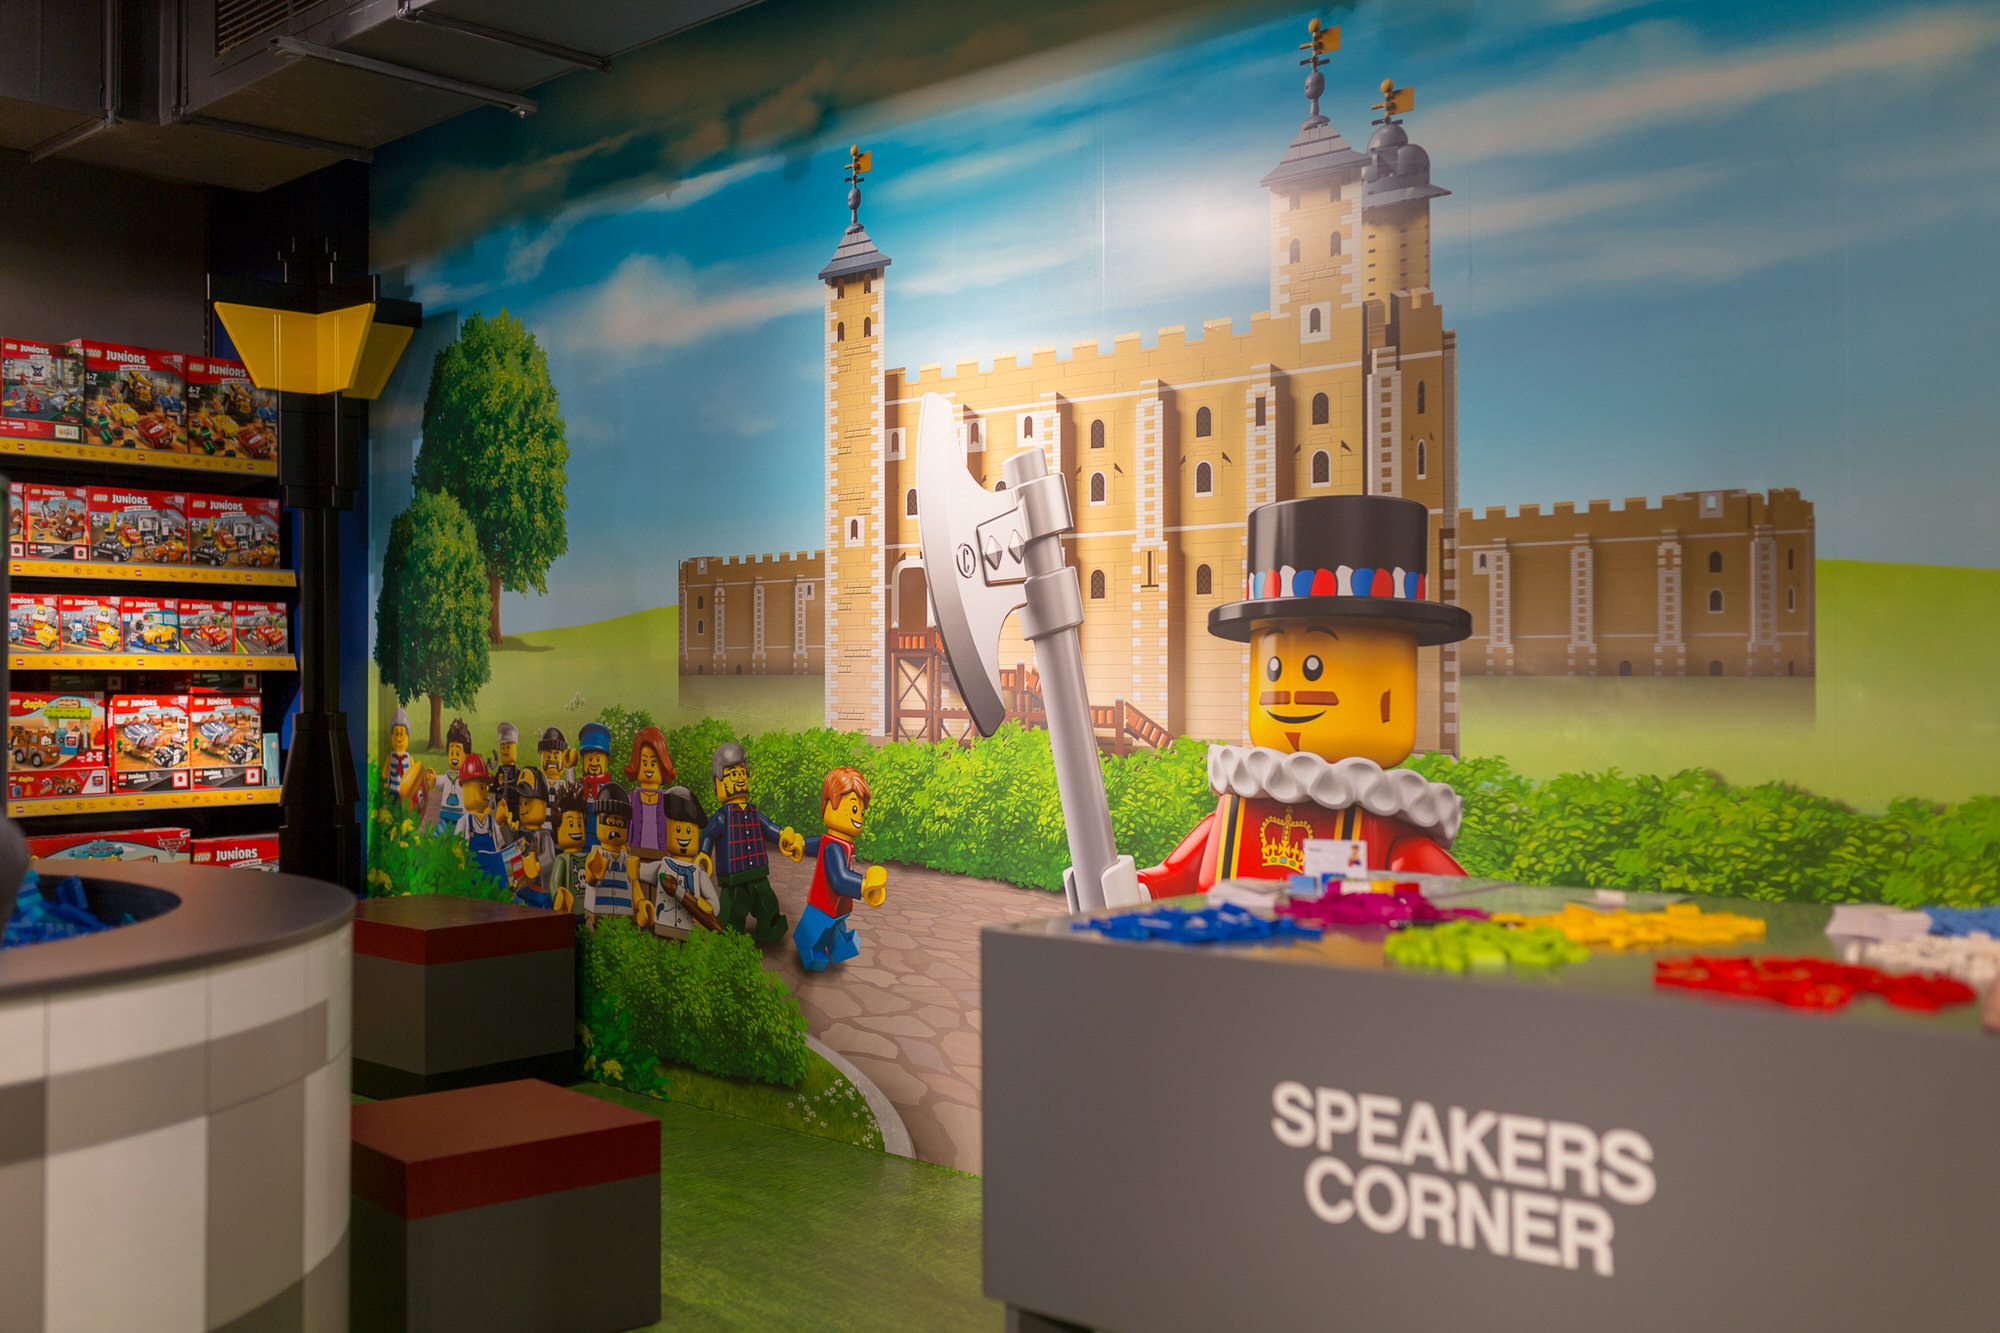 LEGO 60th anniversary at Hamleys London #ad #hamleys #LEGOatHamleys